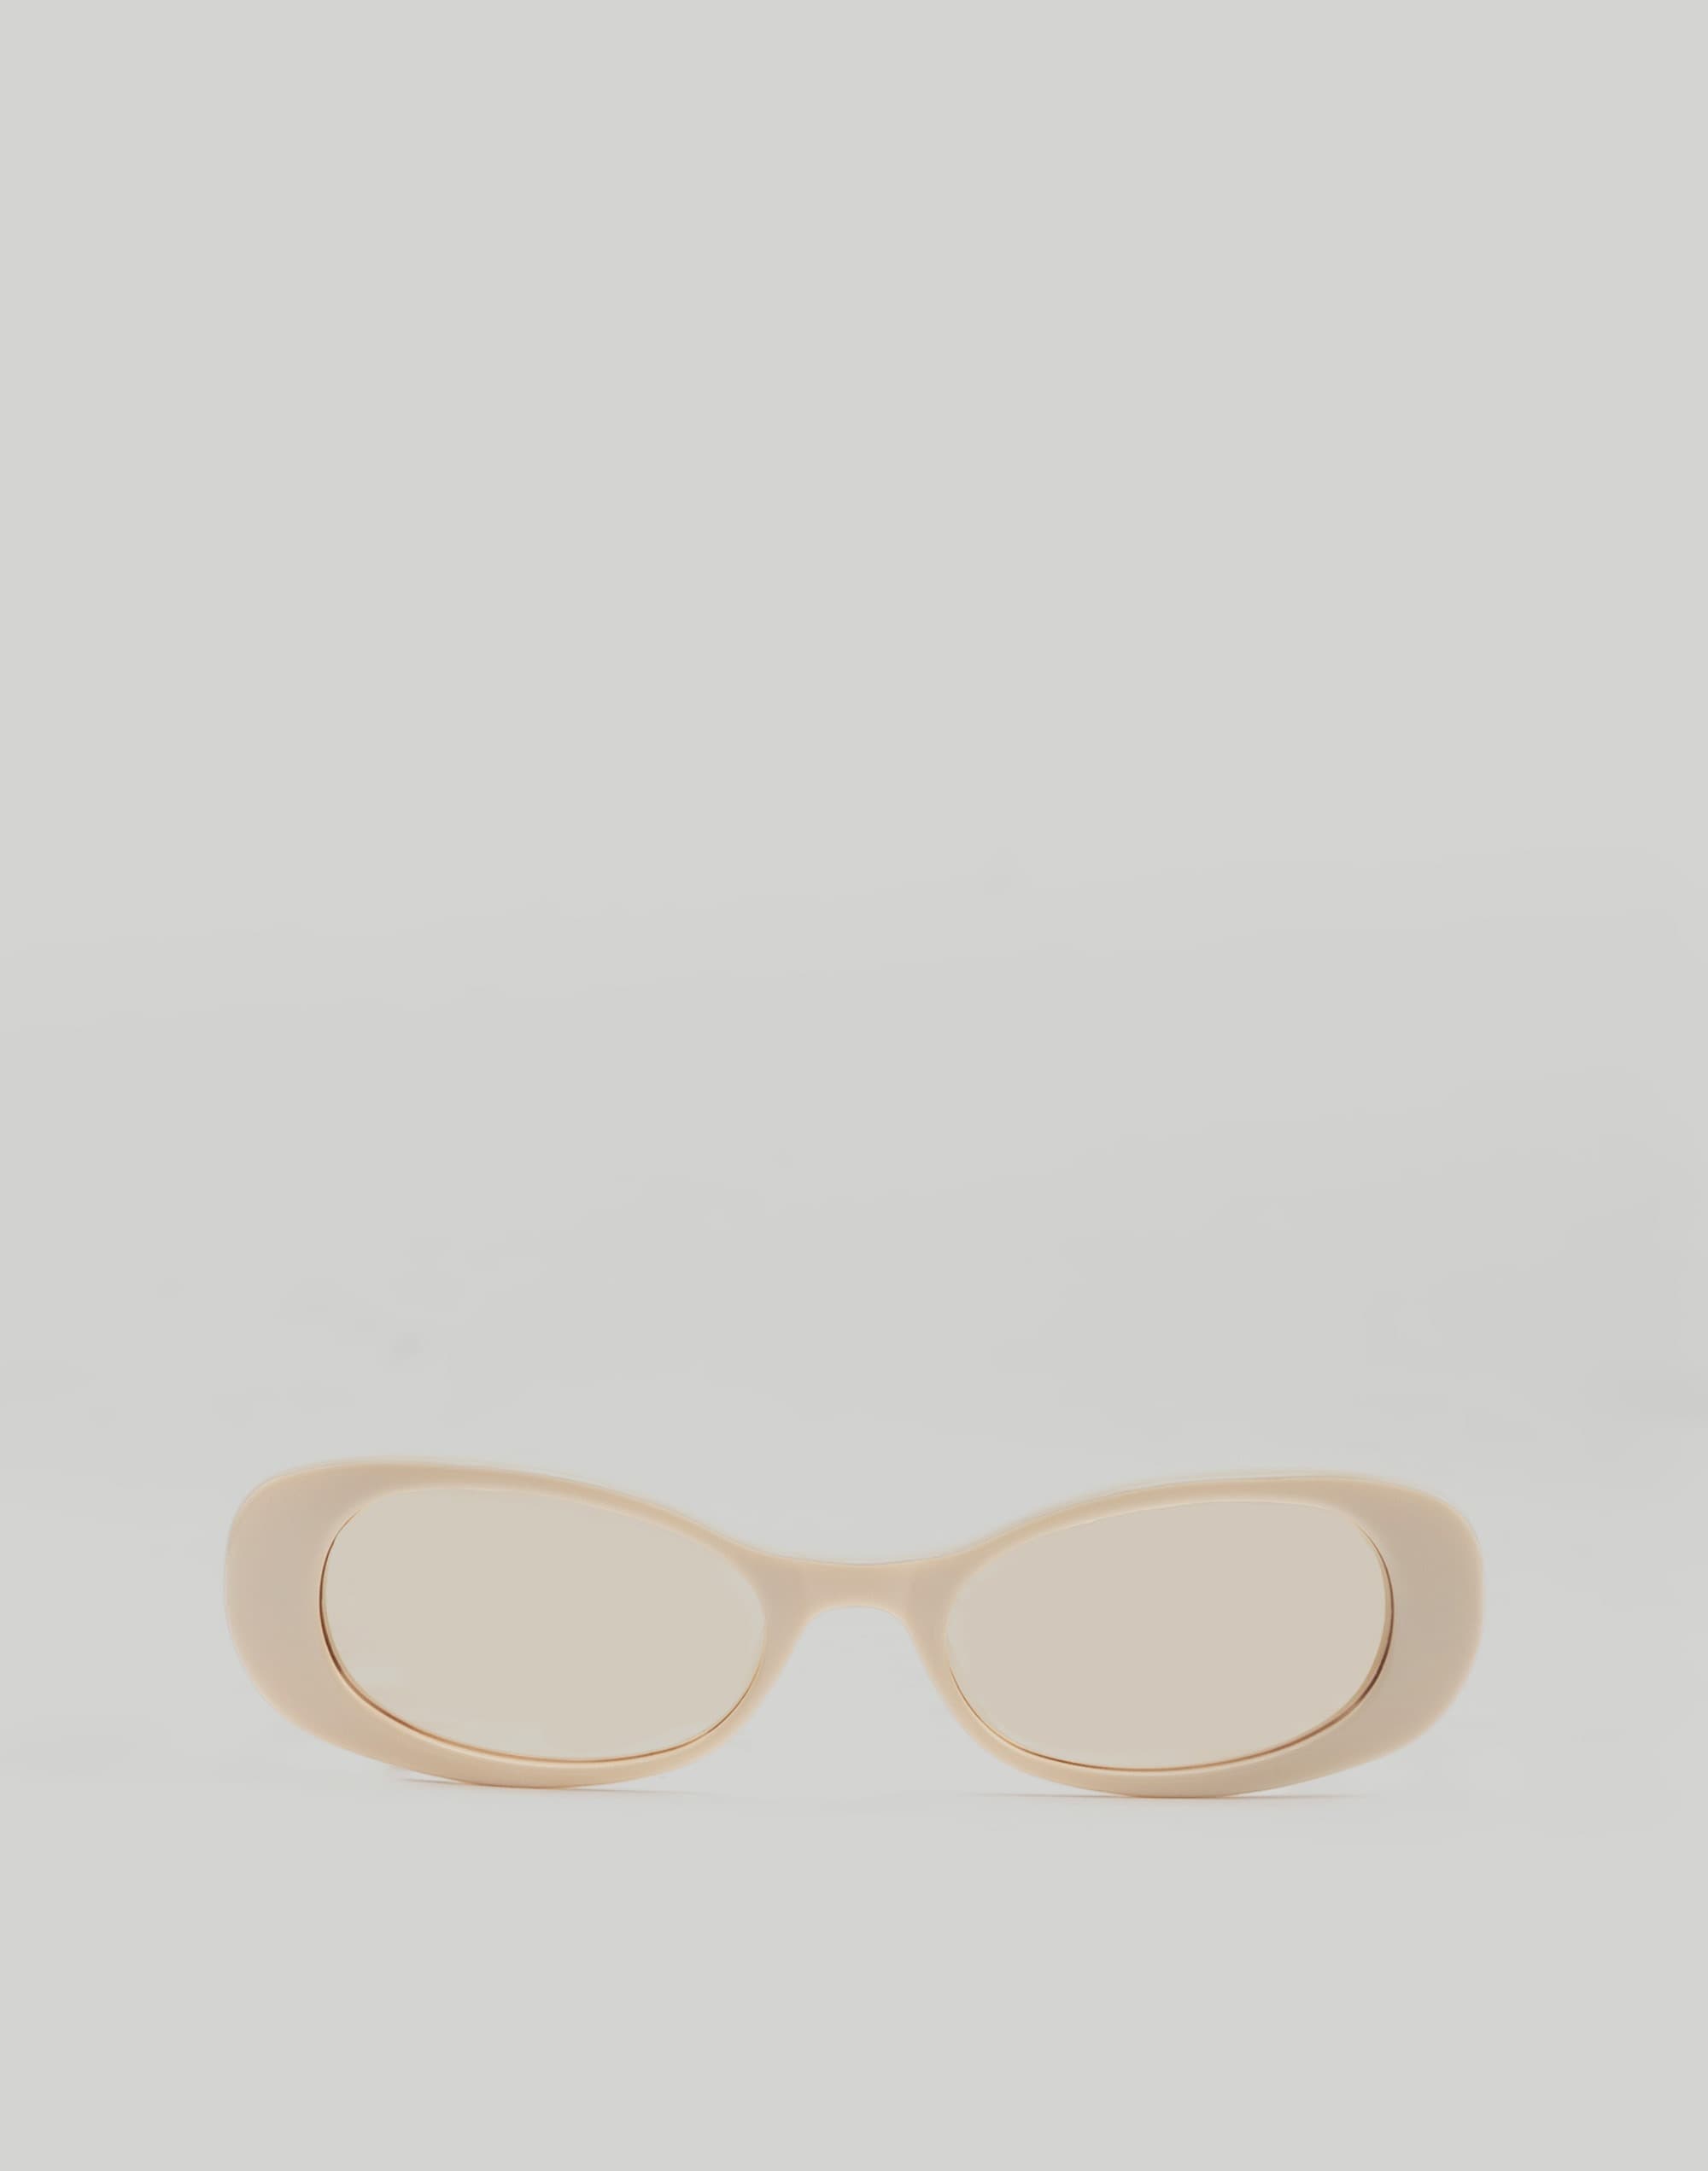 Maguire Brooklyn Sunglasses in Cream